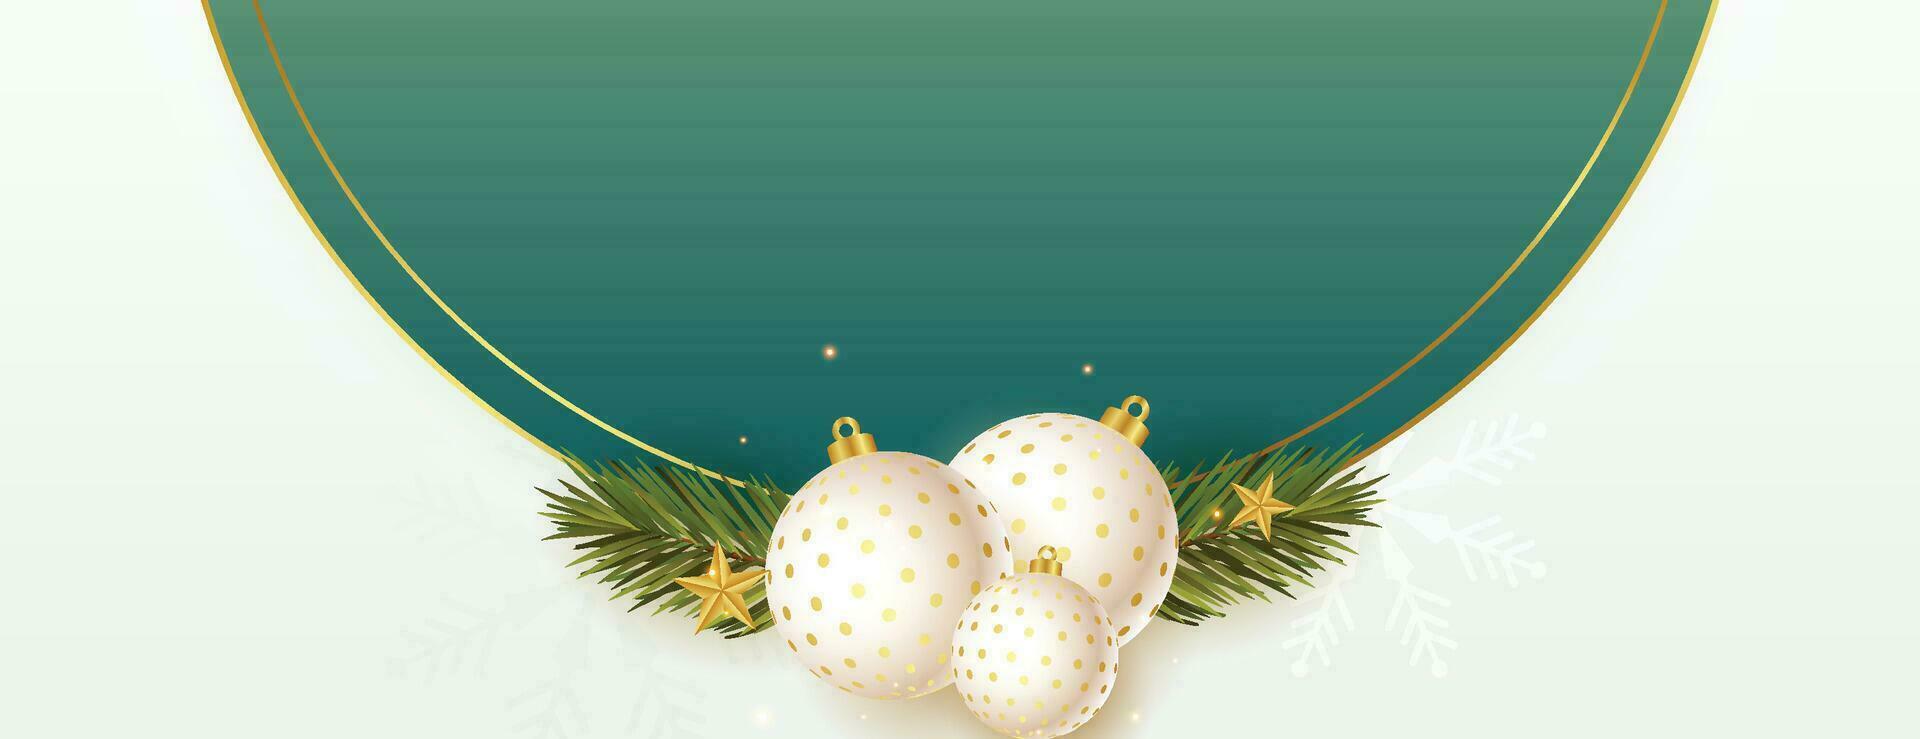 Natale palle, vacanza i regali con d'oro arco, abete albero rami, pino coni e brillante stelle. illustrazione può essere Usato per Natale disegno, manifesti, carte, siti web e striscioni. vettore